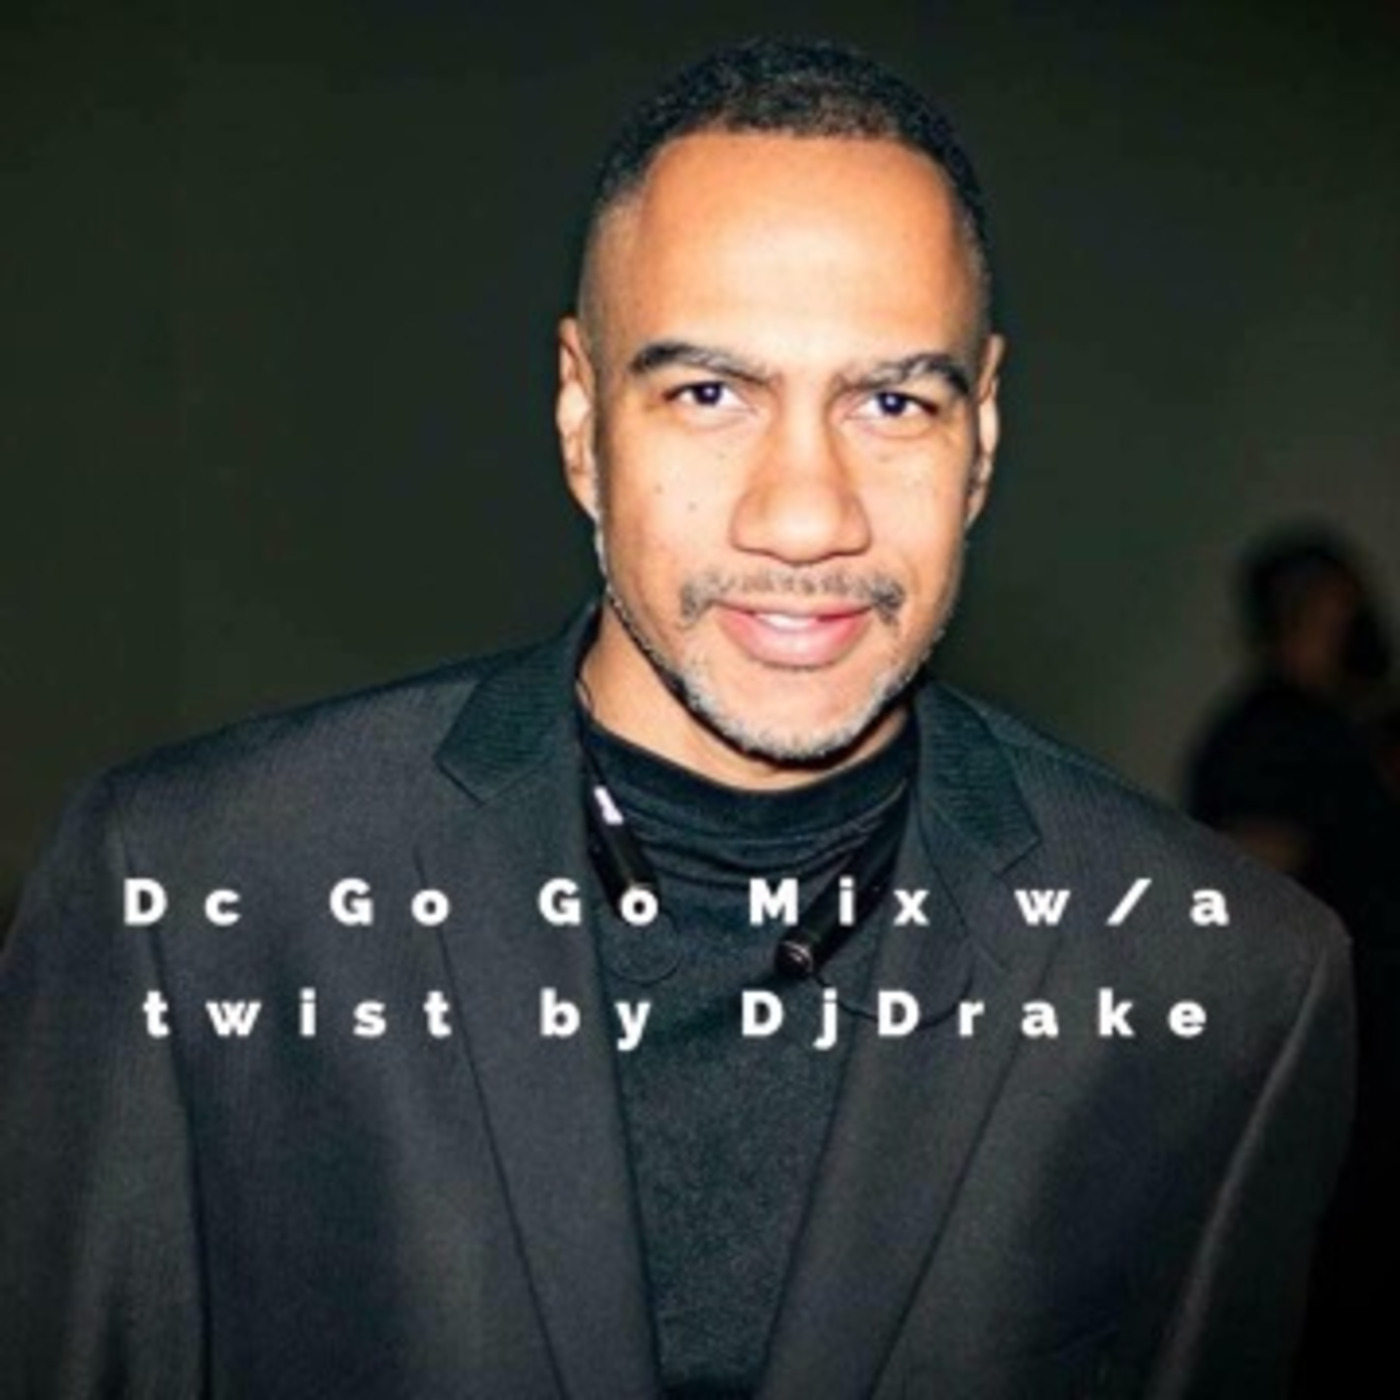 Dc GoGo w/ a Twist by DjDrake804